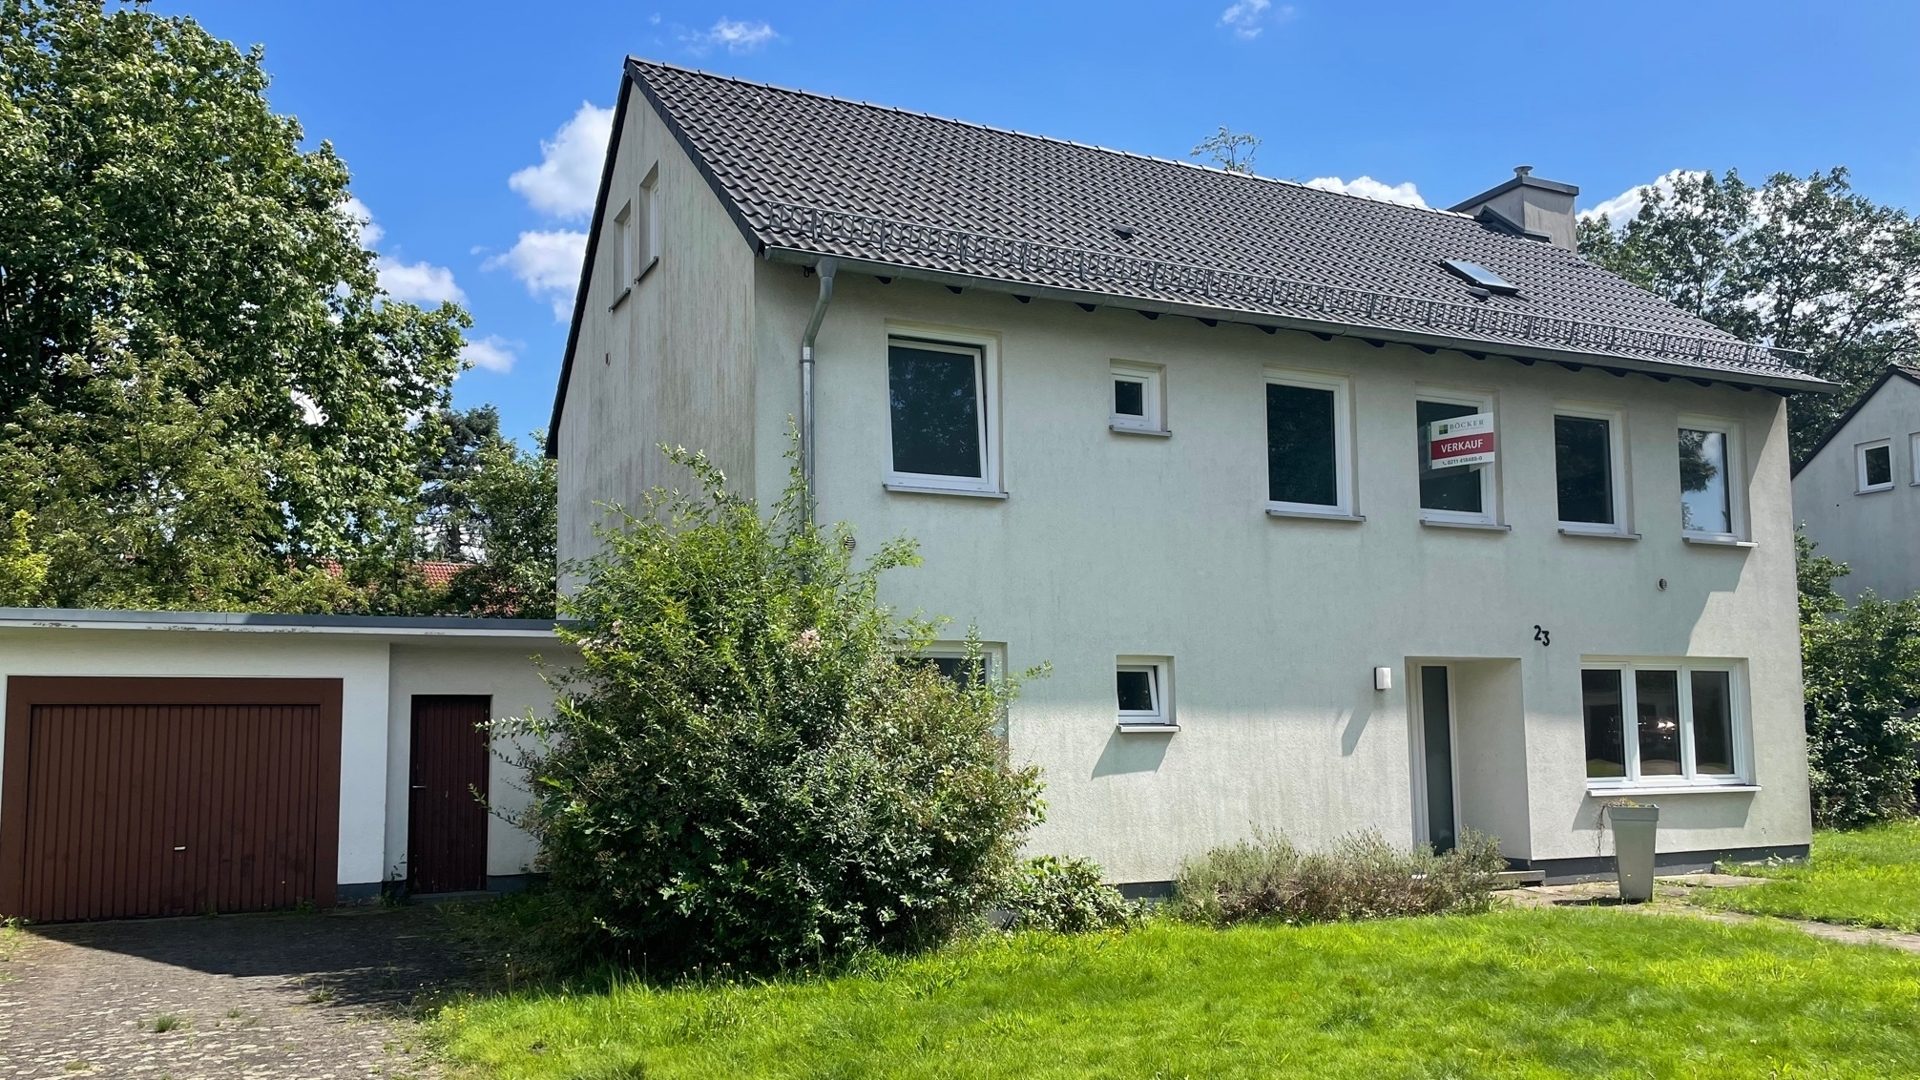 Böcker Wohnimmobilien - Immobilienangebot - Düsseldorf / Lohausen - Alle - Ideal für Familien mit Kindern auf großem Grundstück!